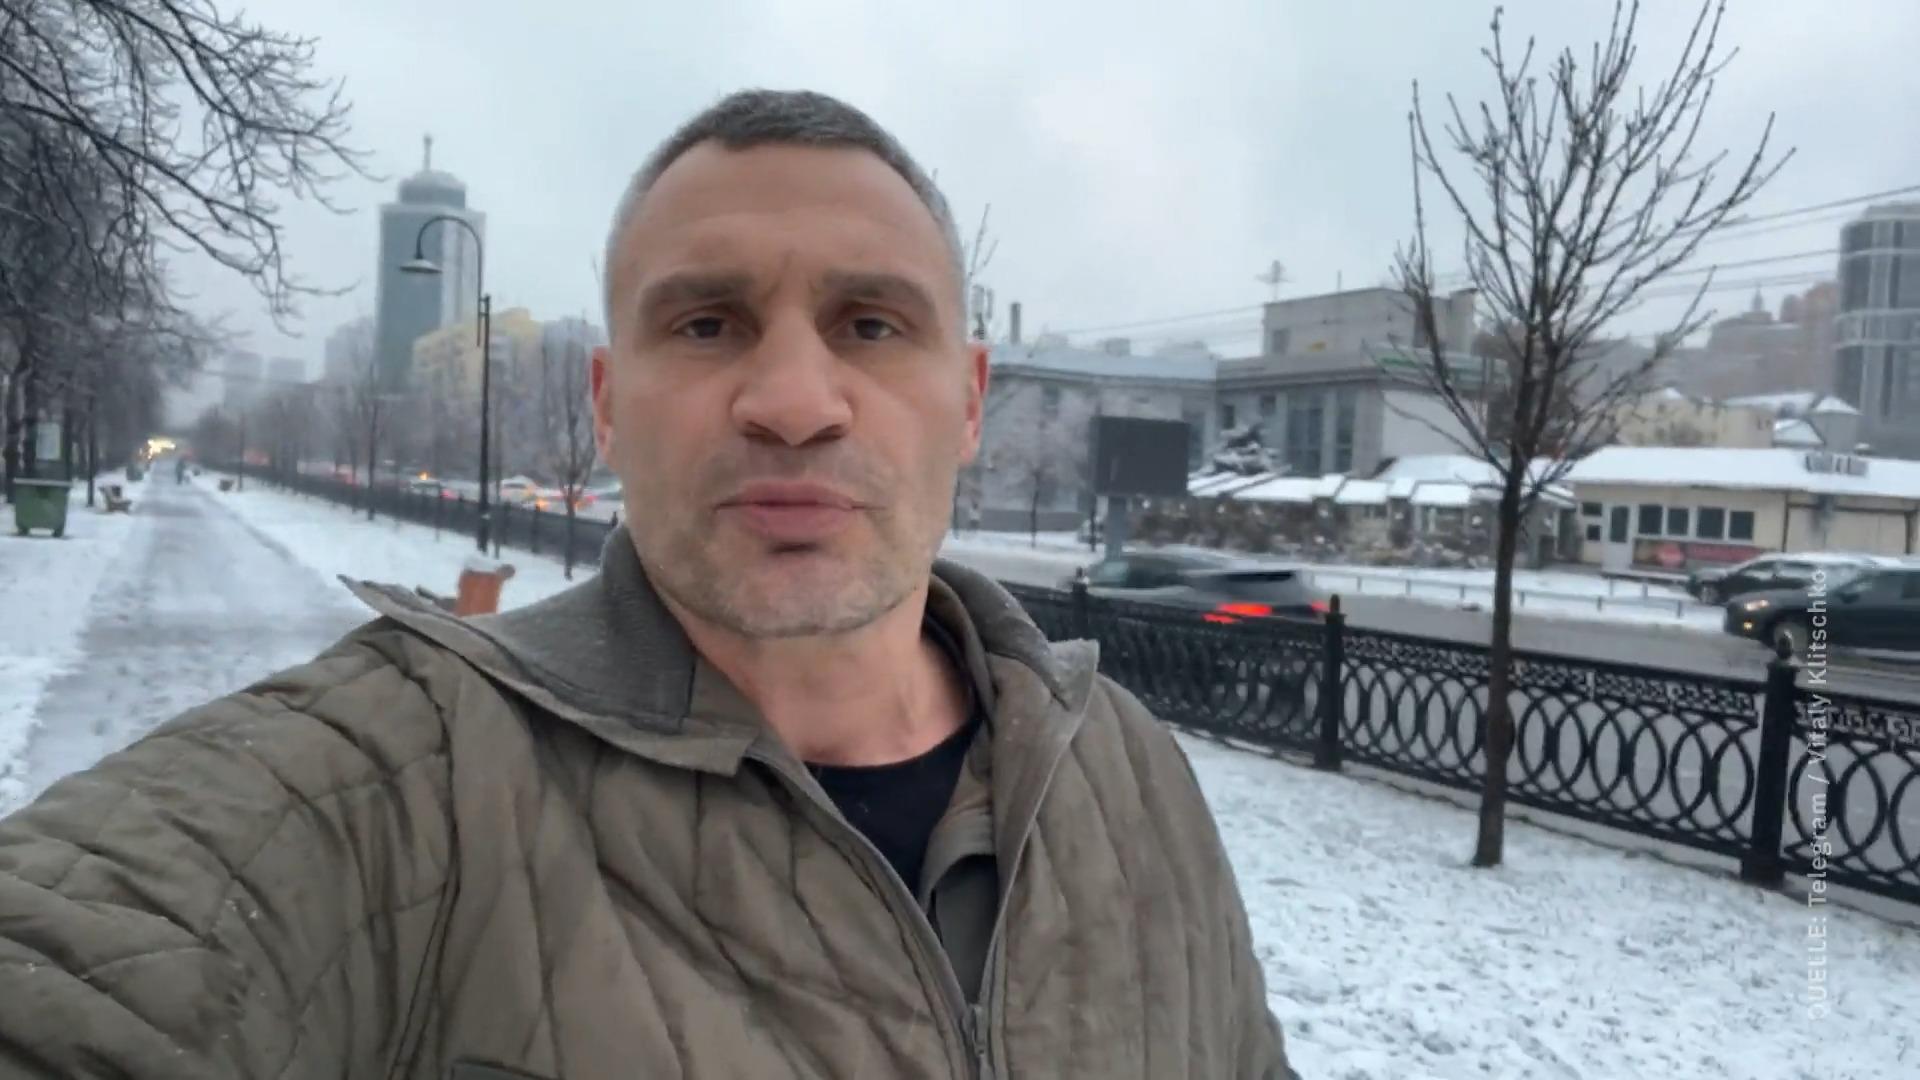 "Es ist albern" - Klitschko verurteilt Selenskyjs Kritik Cherson in Angst, Streit in Kiew